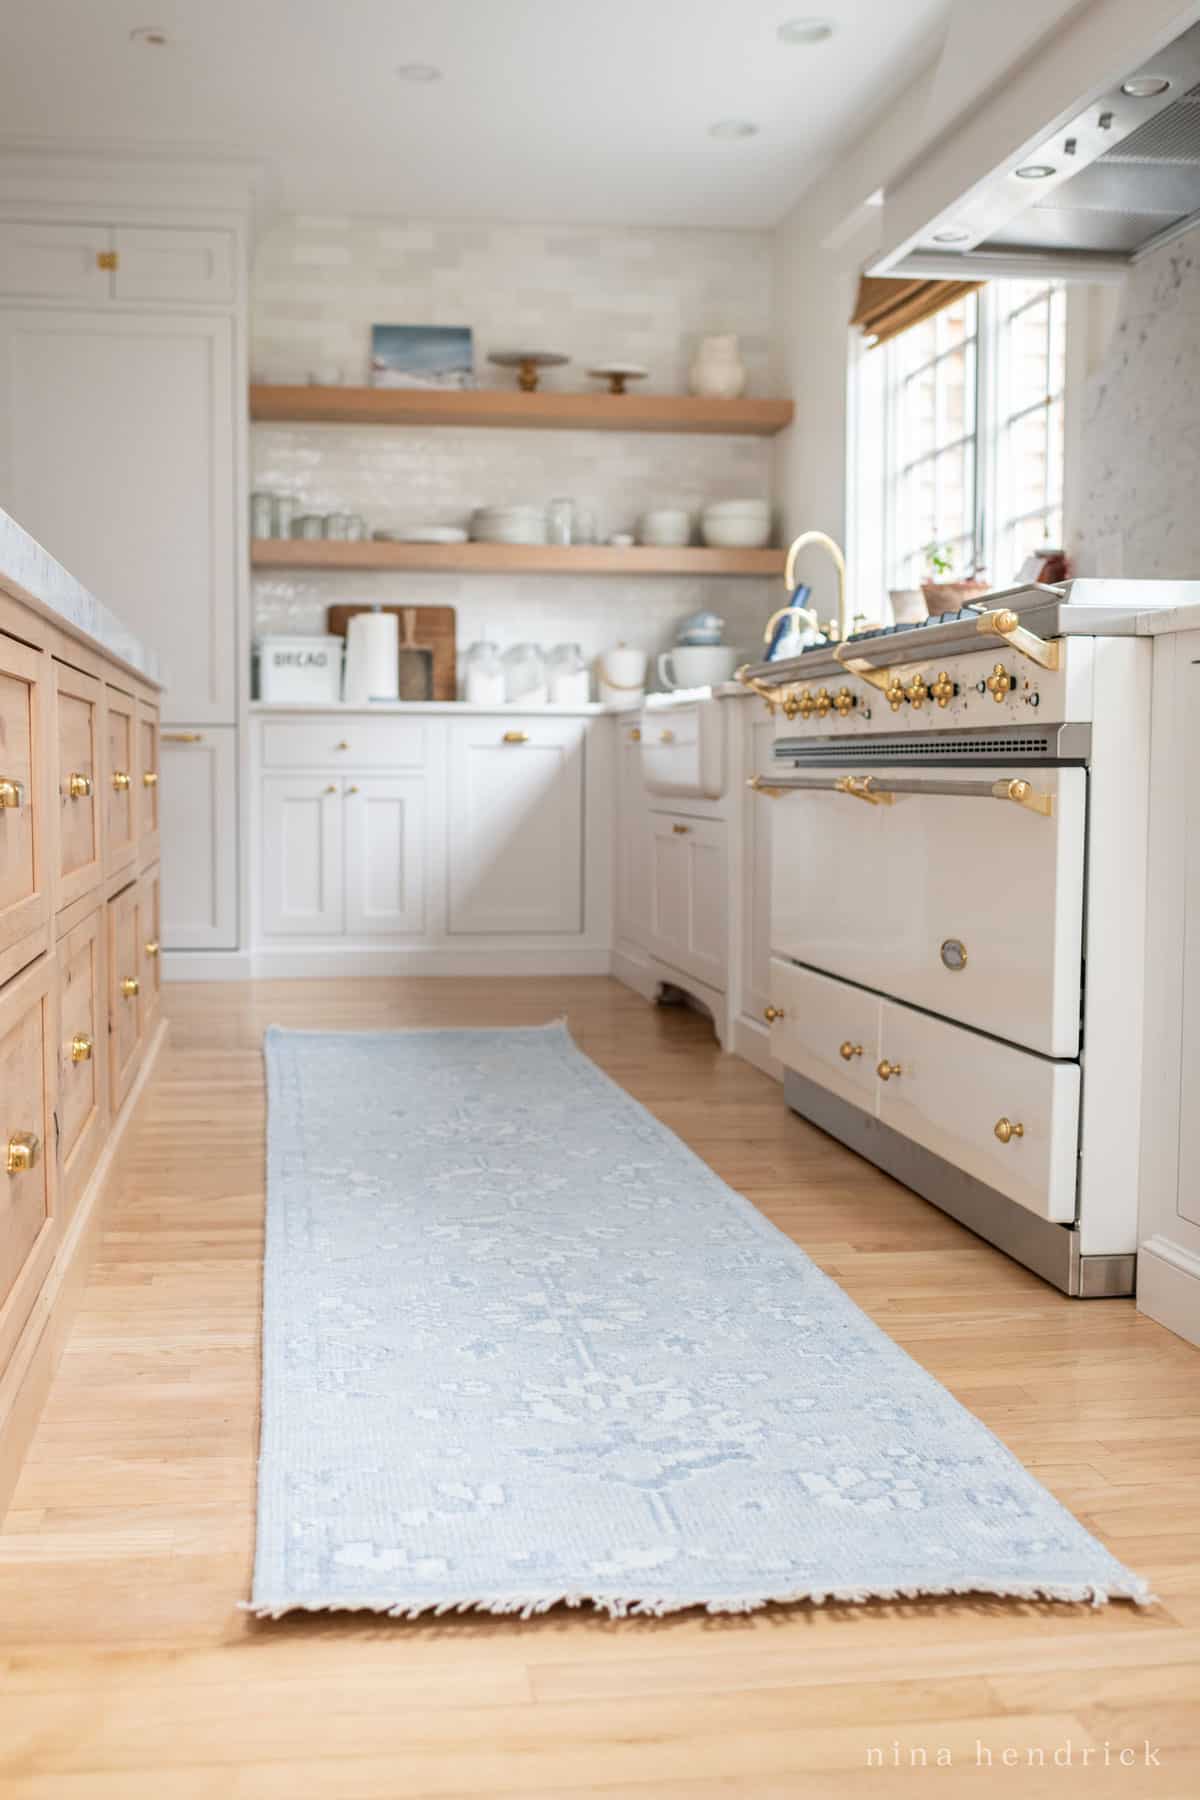 Kitchen with blue runner rug